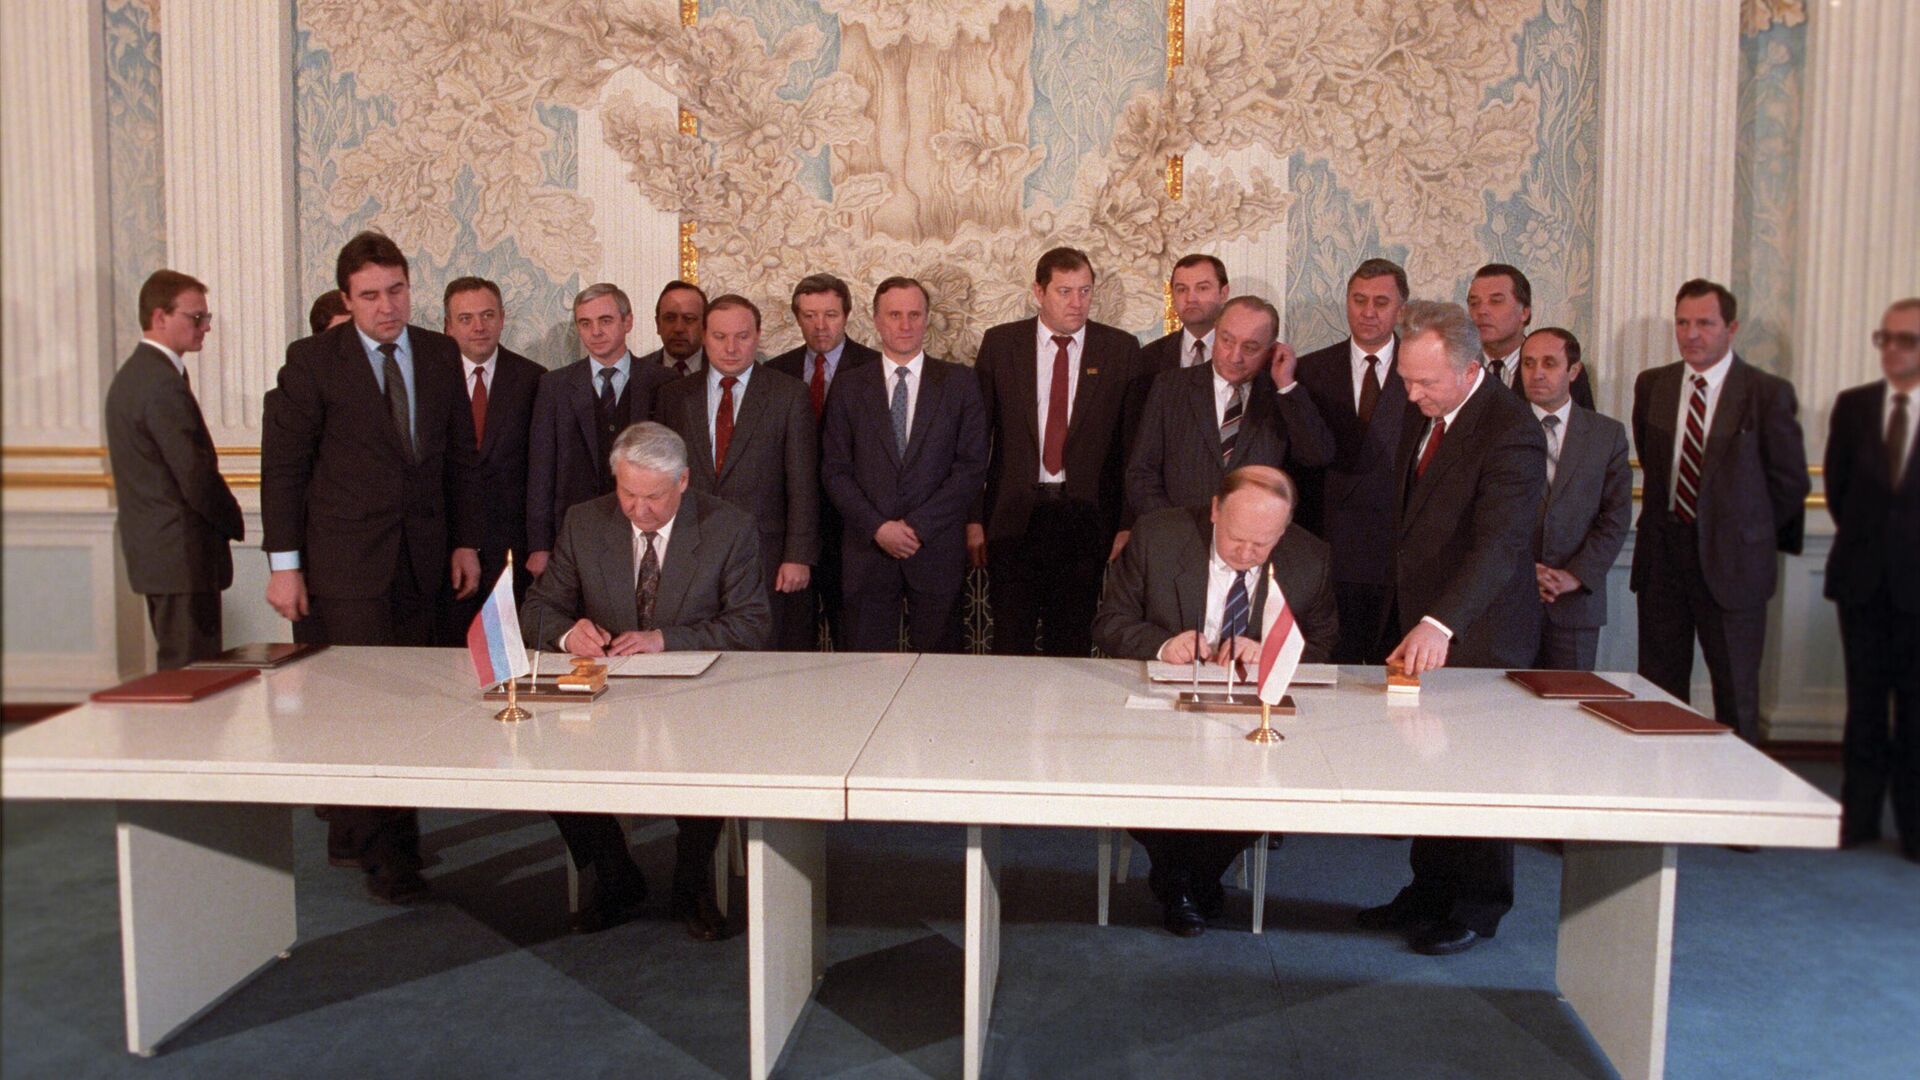 8 декабря 1991 года беловежских соглашений. Ельцин Шушкевич Беловежская пуща. Беловежская пуща 1991 СНГ. Подписание Беловежских соглашений. 8 Декабря 1991 года. Беловежские соглашения 1991 Ельцин Шушкевич.